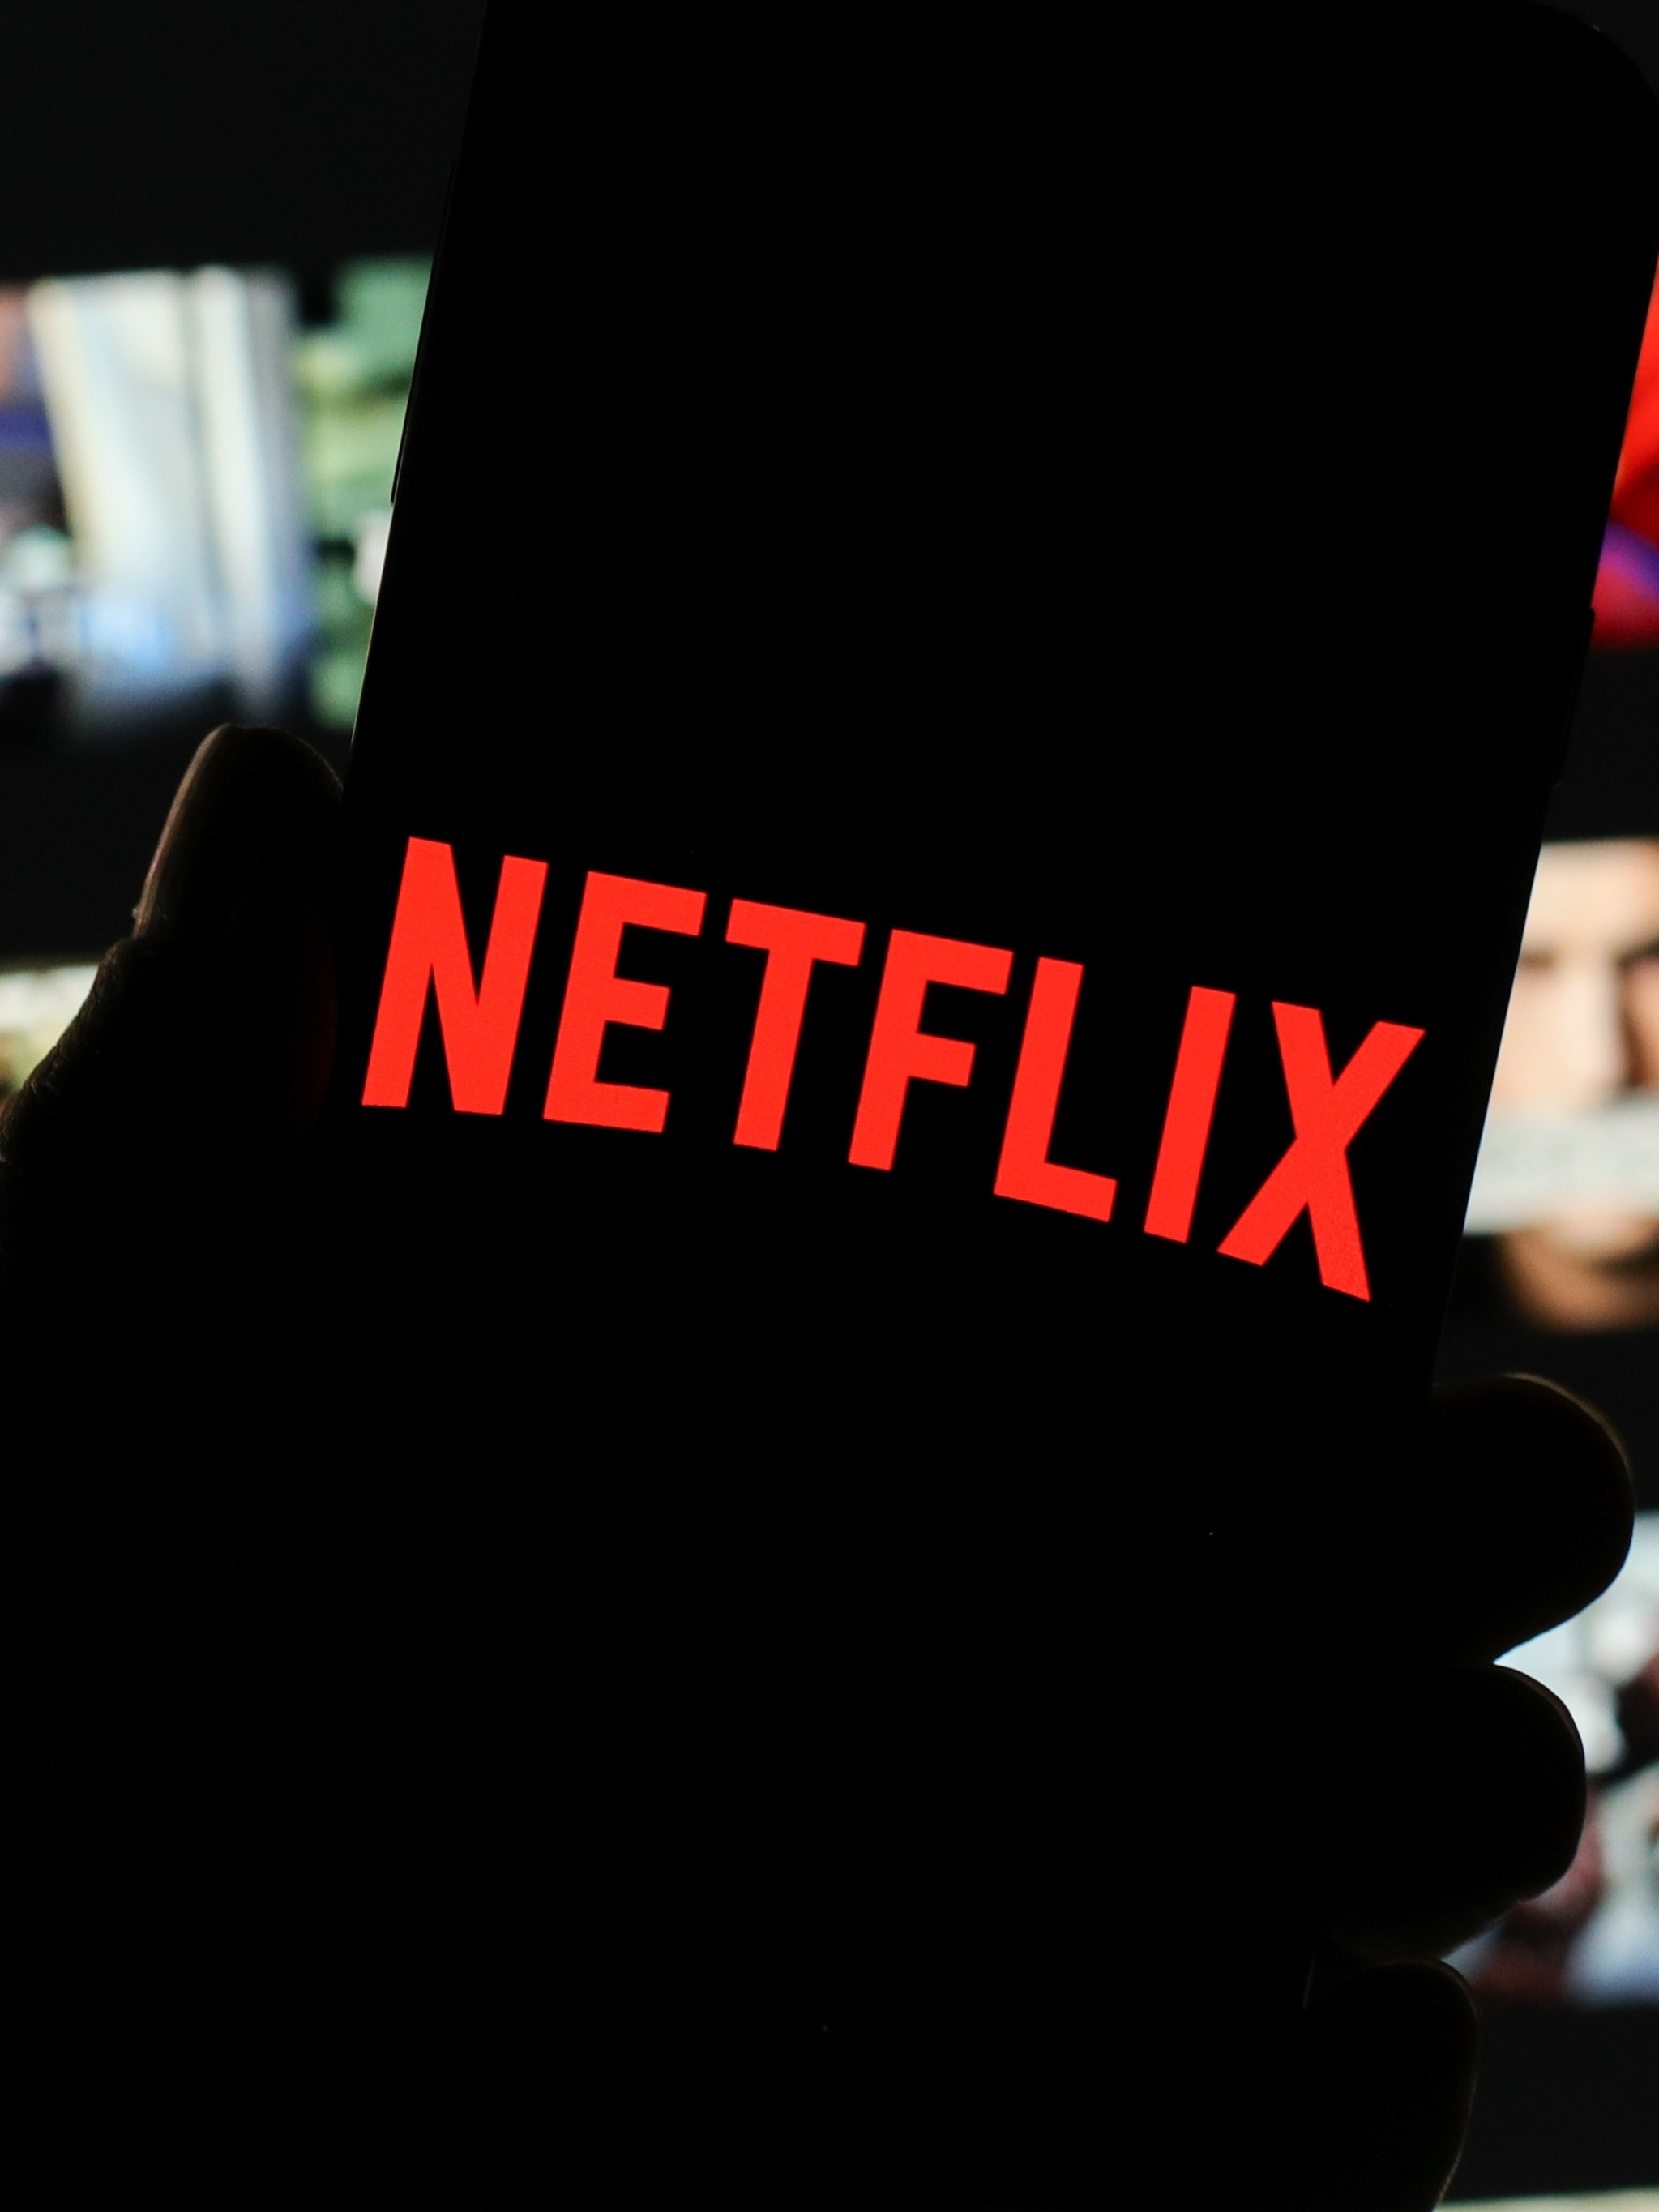 Após SP, RJ e PR, Procon-SC também notifica Netflix por cobrança